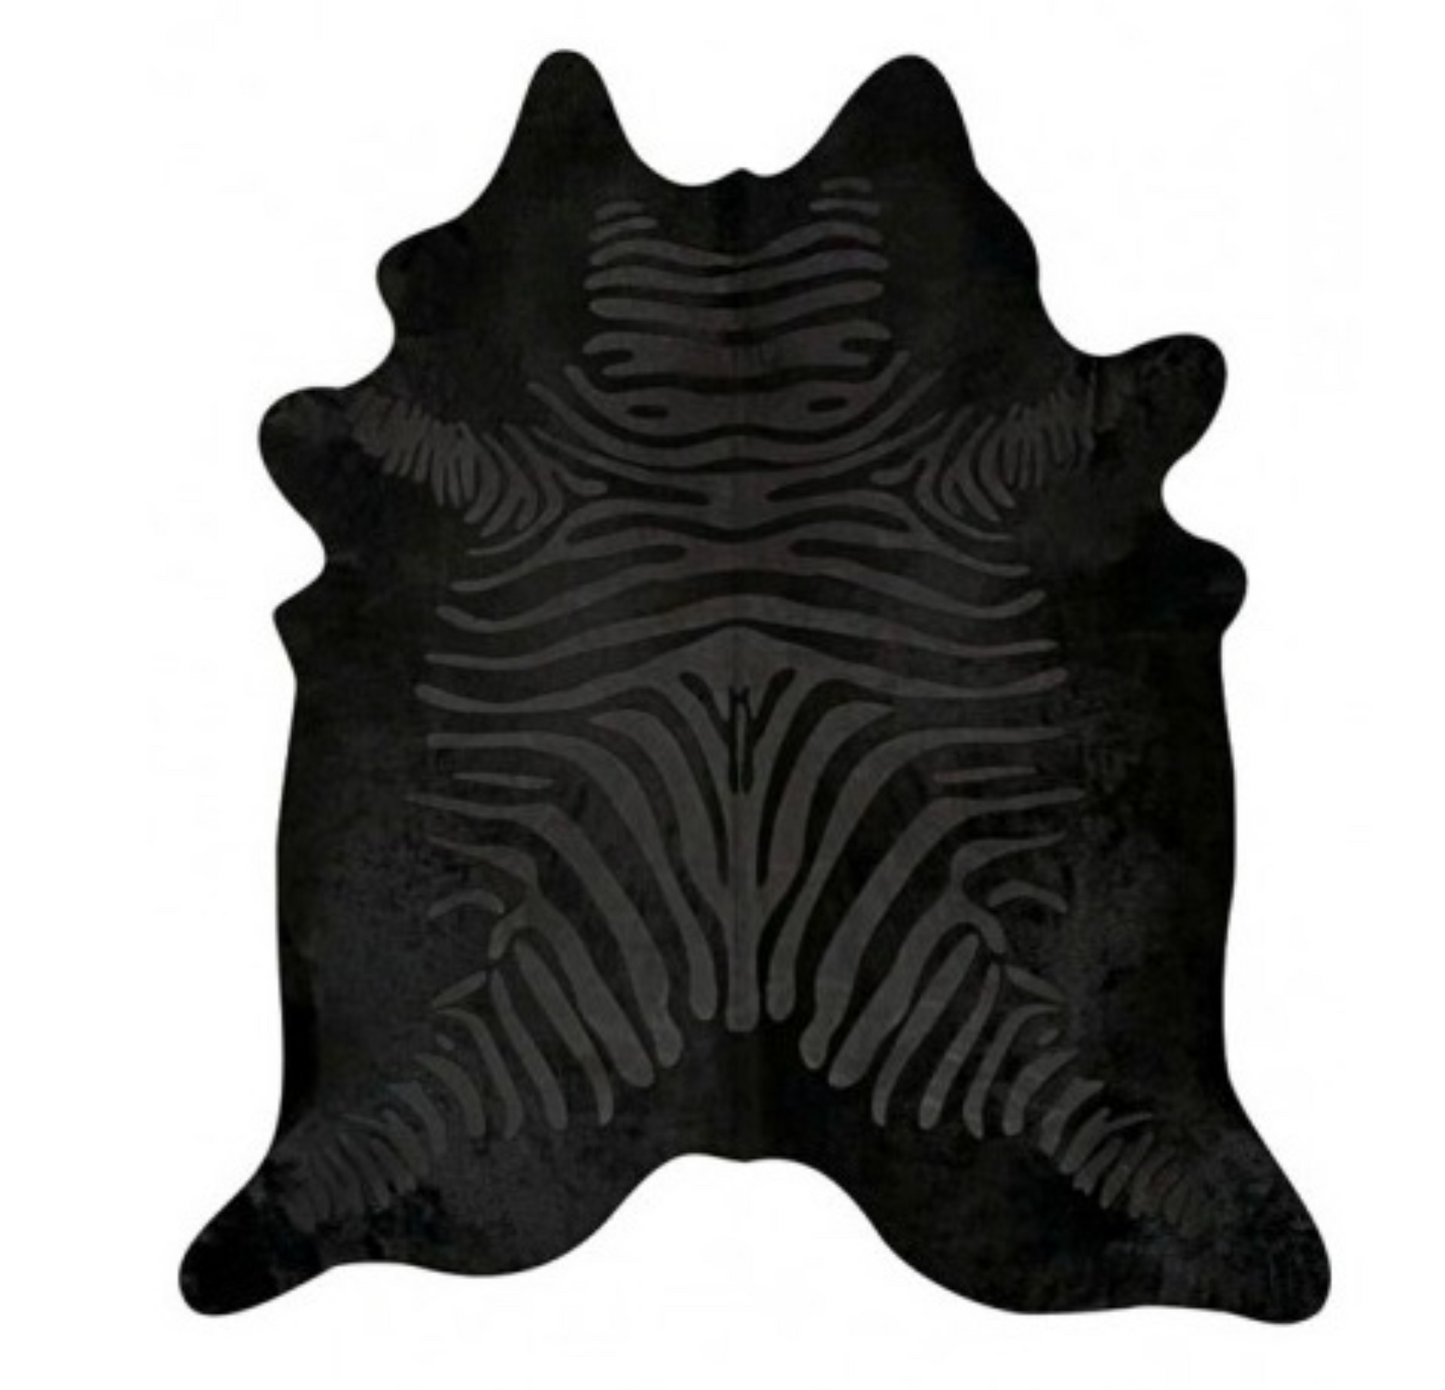 Etched Zebra Printed Cowhide Rug, Black